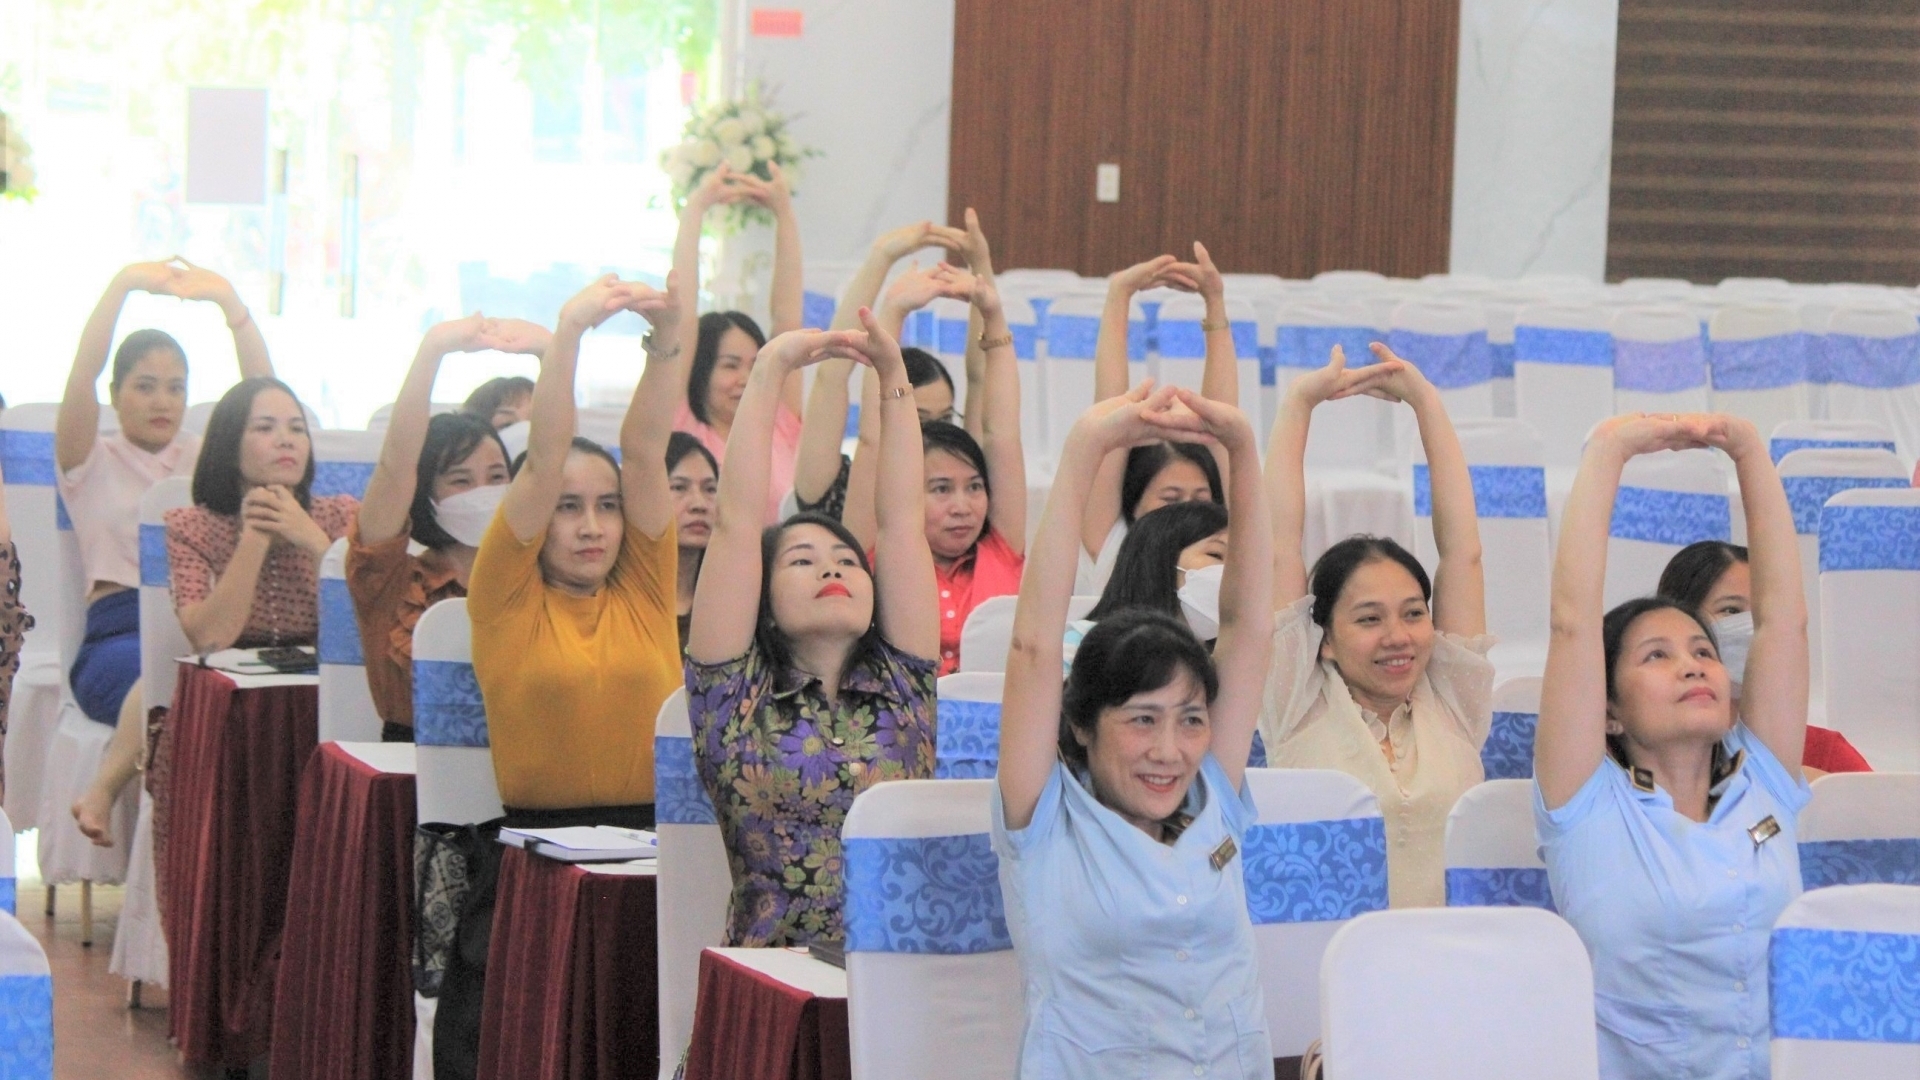 "Sức khỏe của bạn": một chương trình bổ ích của Công đoàn viên chức tỉnh Nghệ An